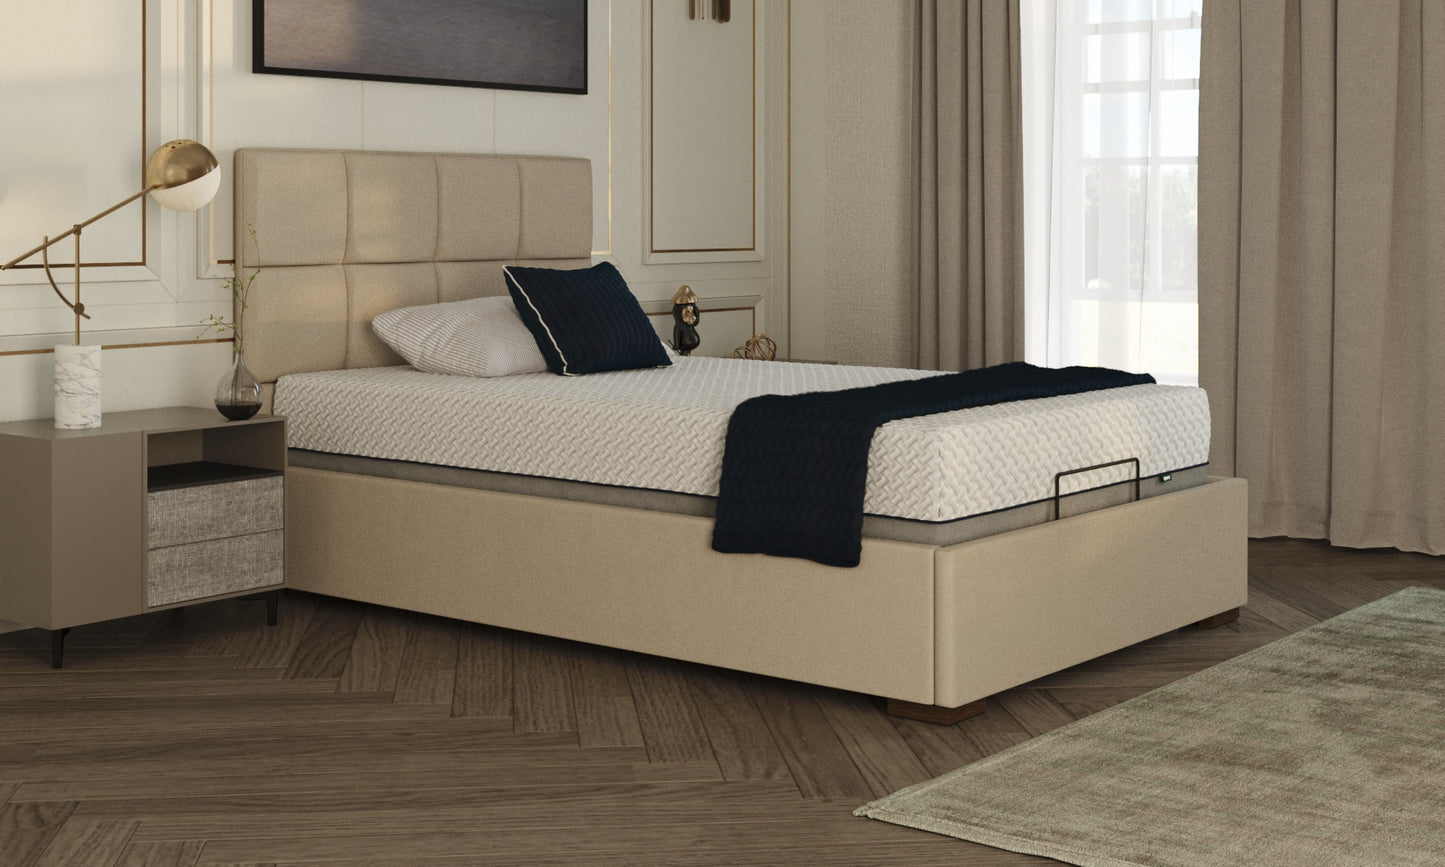 Hagen 4ft bed in linen with an opal headboard in a bedroom